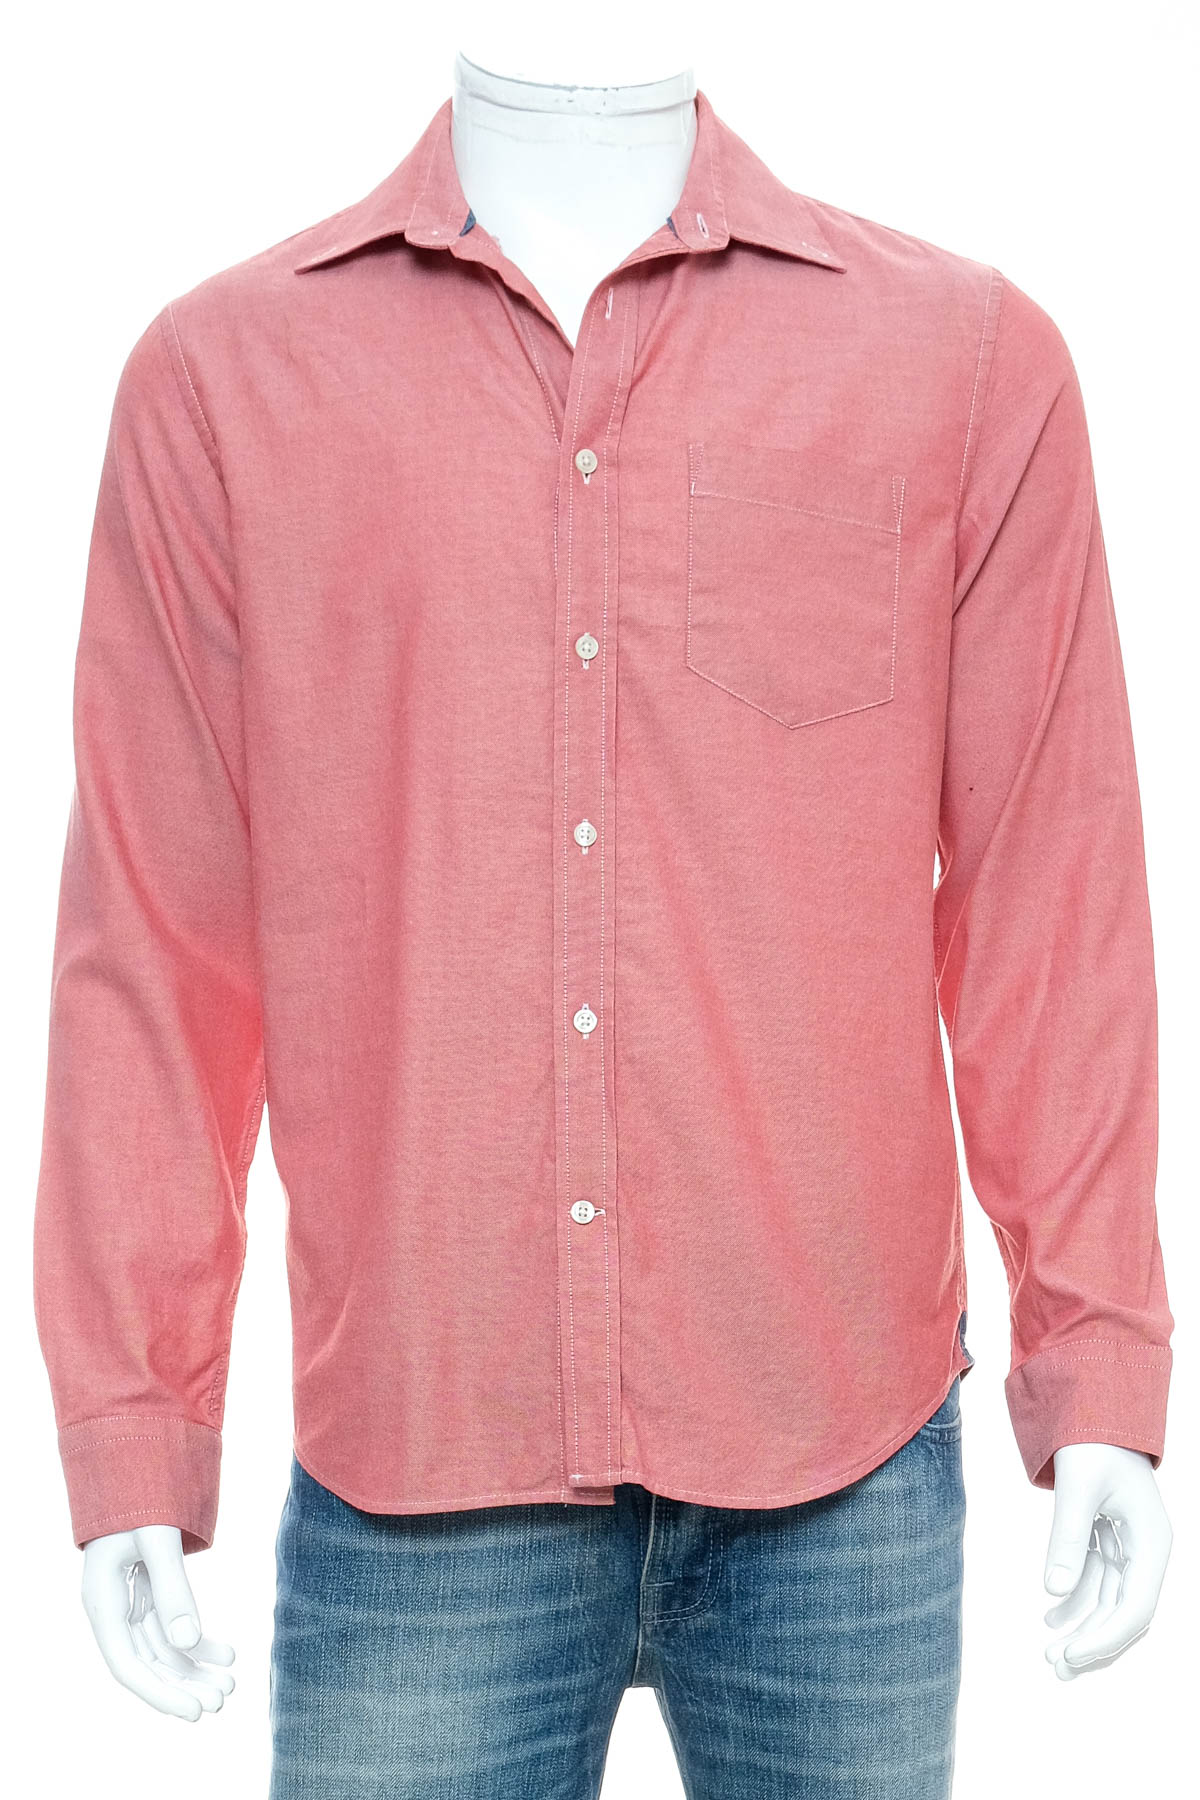 Ανδρικό πουκάμισο - BANANA REPUBLIC - 0